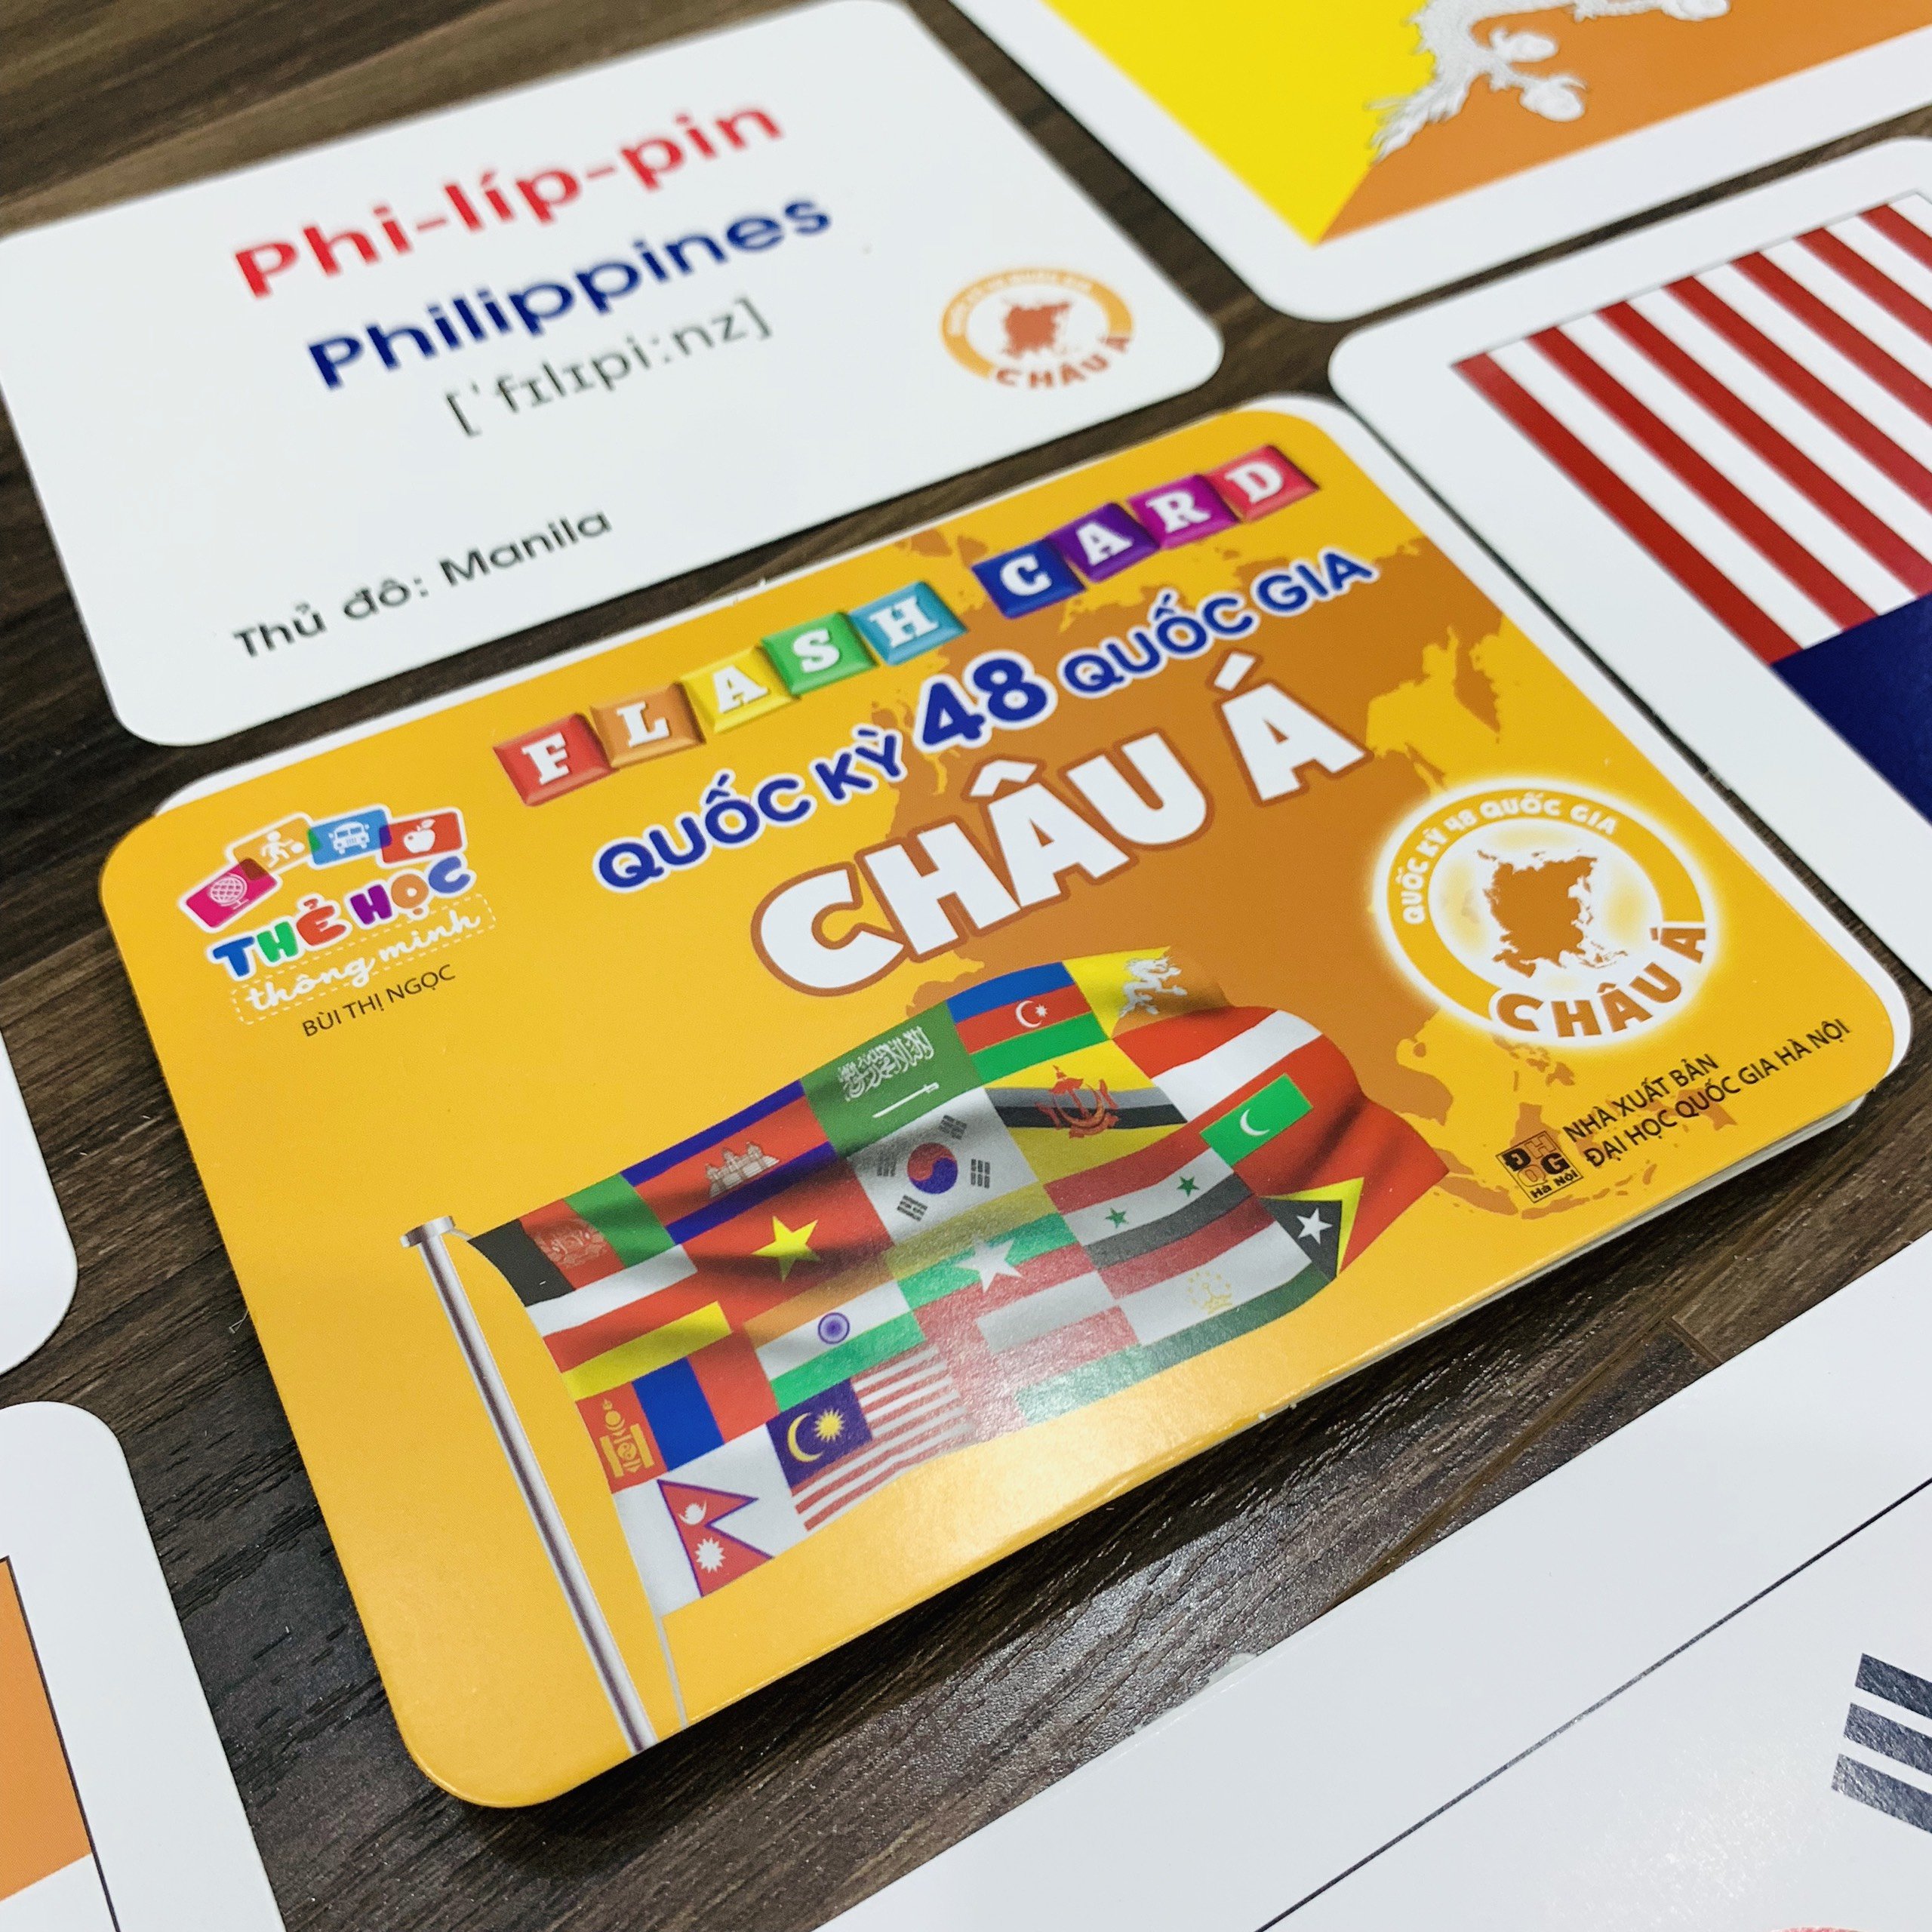 Bộ Thẻ Học Flash Card Chủ Đề Quốc Kỳ Các Quốc Gia Châu Á Bộ 48 Thẻ Cho Trẻ Thông Minh, Tư Duy, Ghi Nhớ